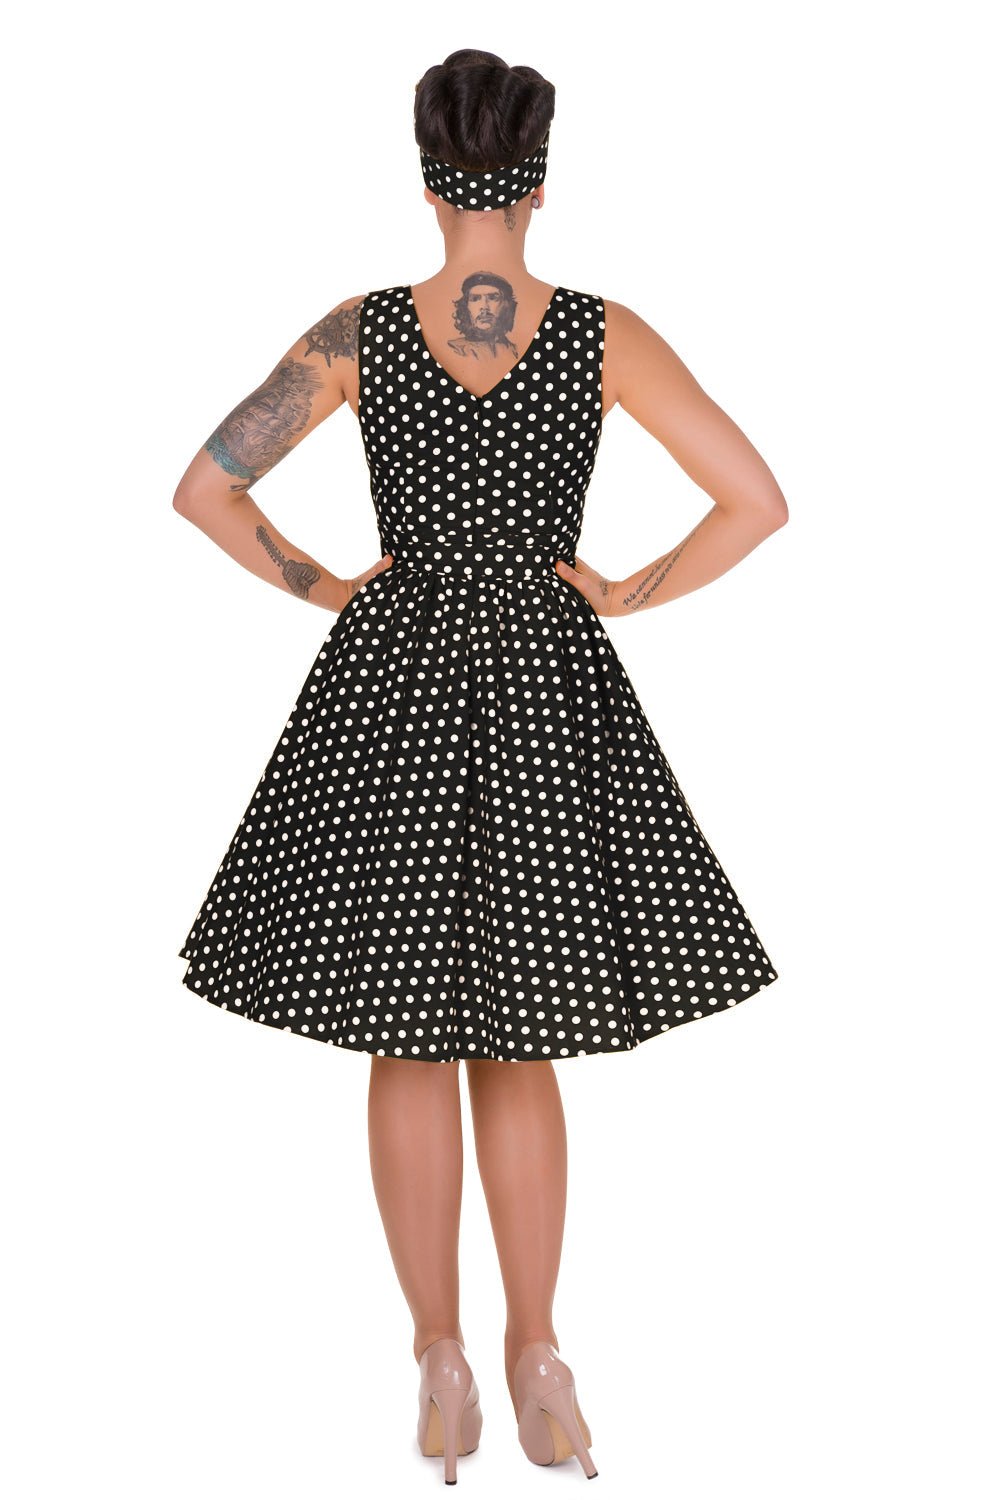 V-neck 50s Style Swing Dress in Black Polka Dot